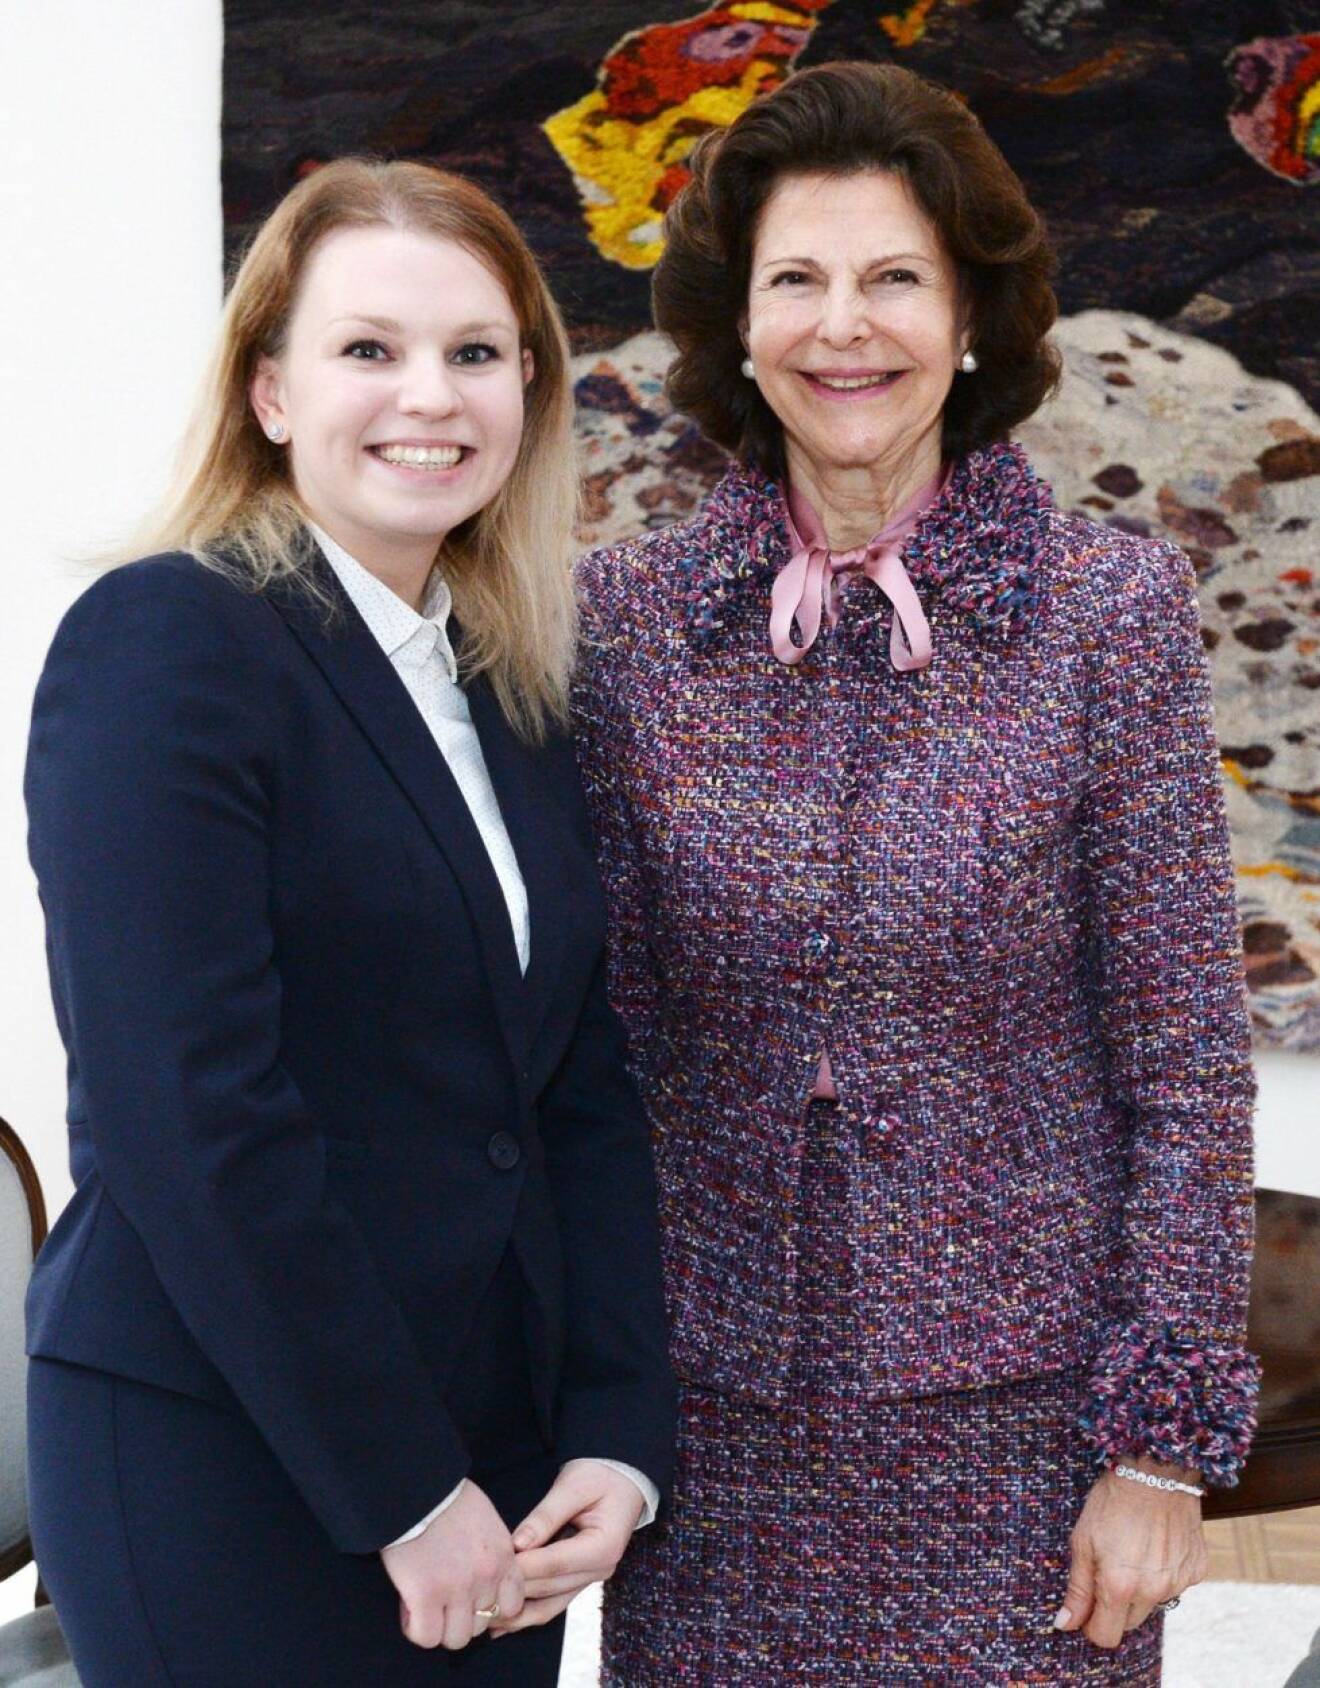 "Jag önskar dig en fortsatt bra karriär", sa drottning Silvia till årets stipendiat Natalia Duszeńska.